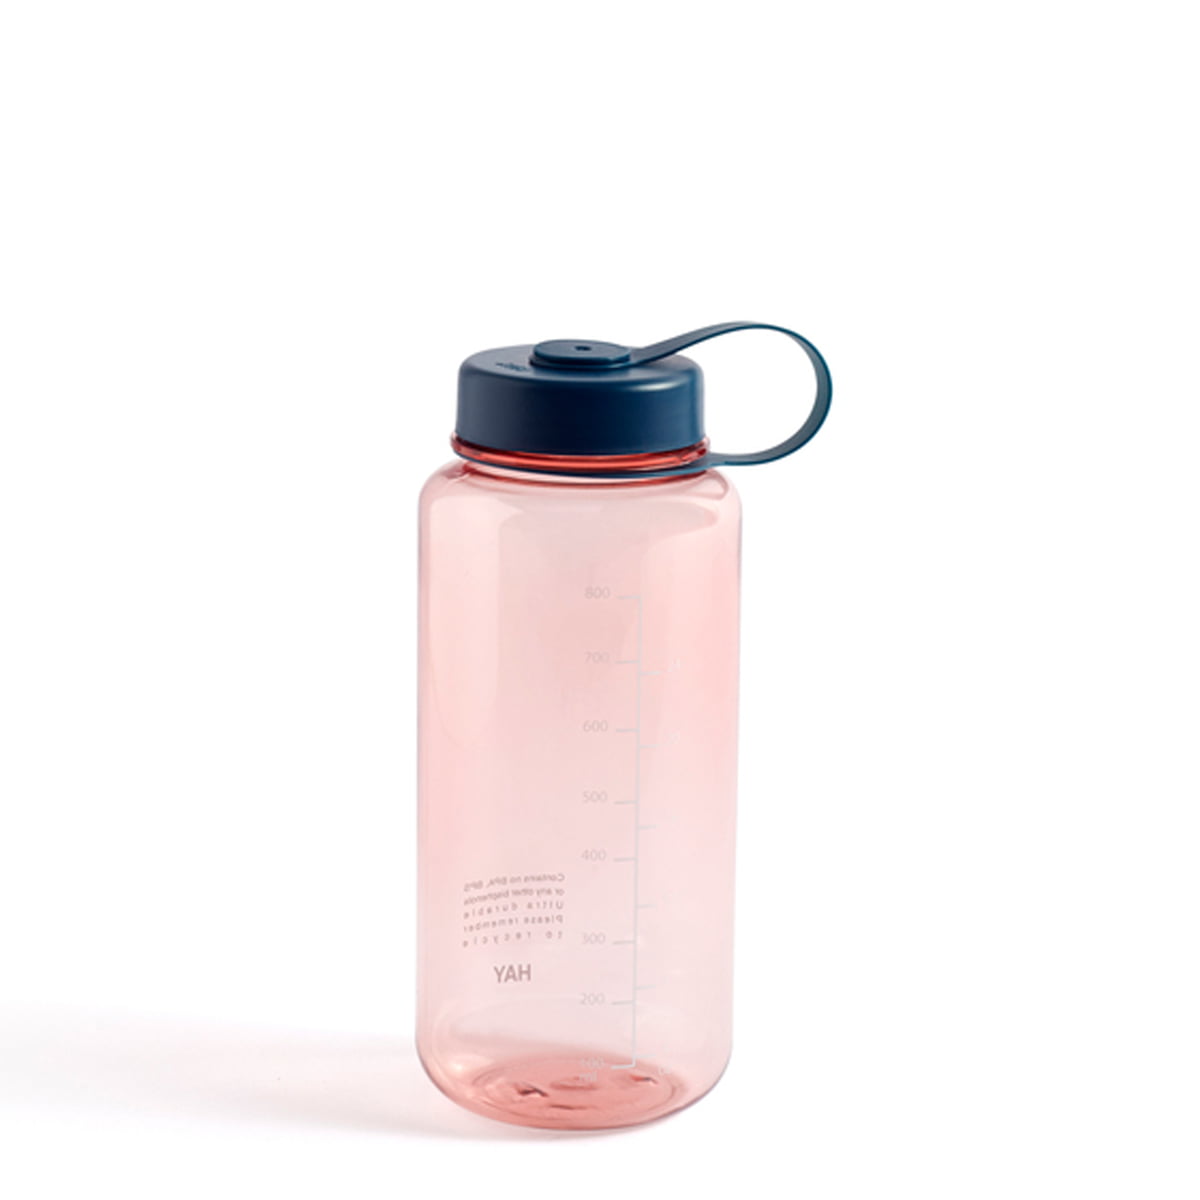 HAY - Wasser-Flasche, 0,9 l, rose